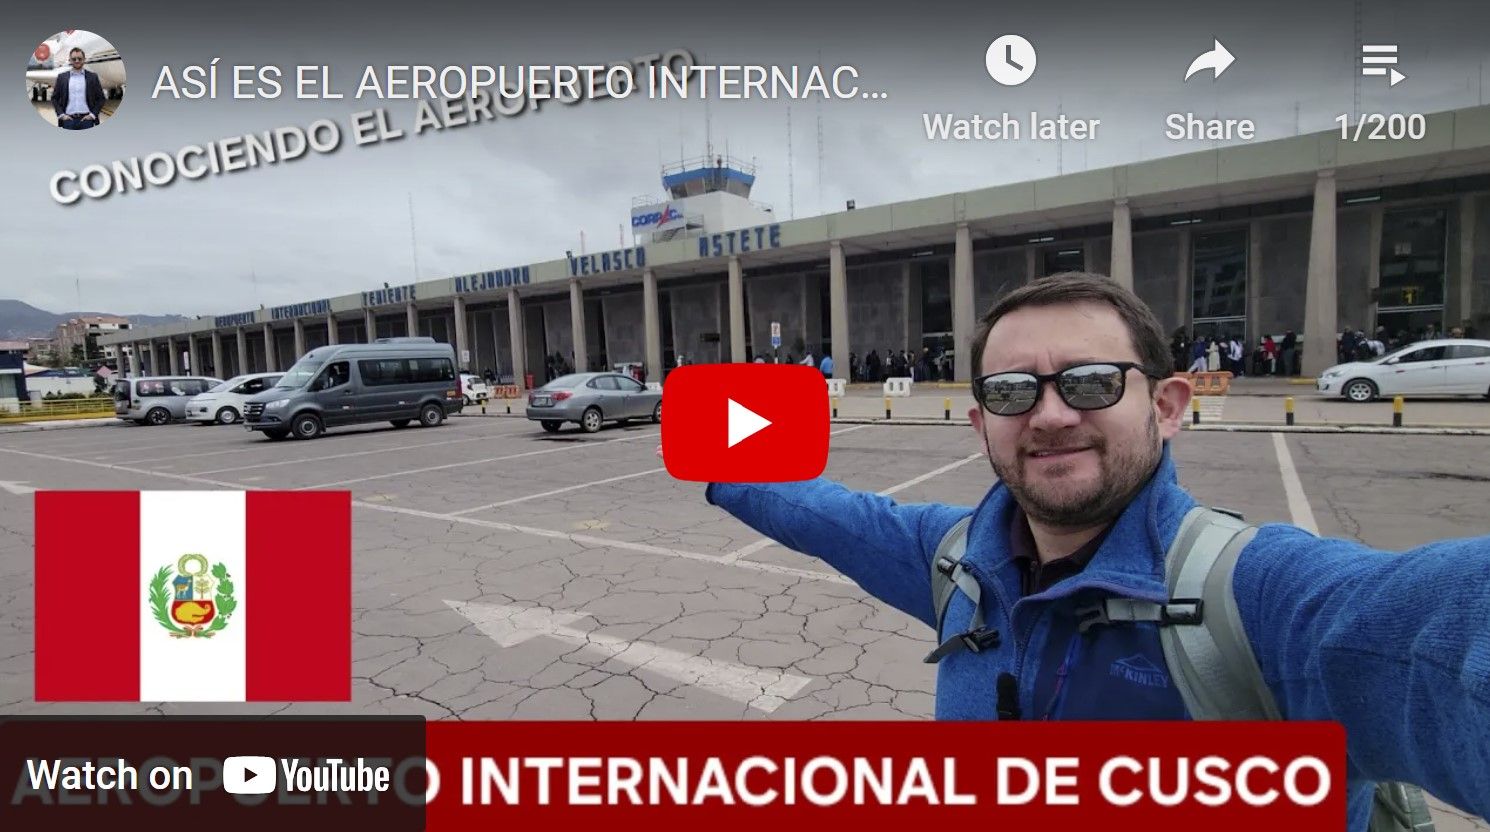 Canal do YouTube Nicolas Larenas aviação viagens aviões aeroportos